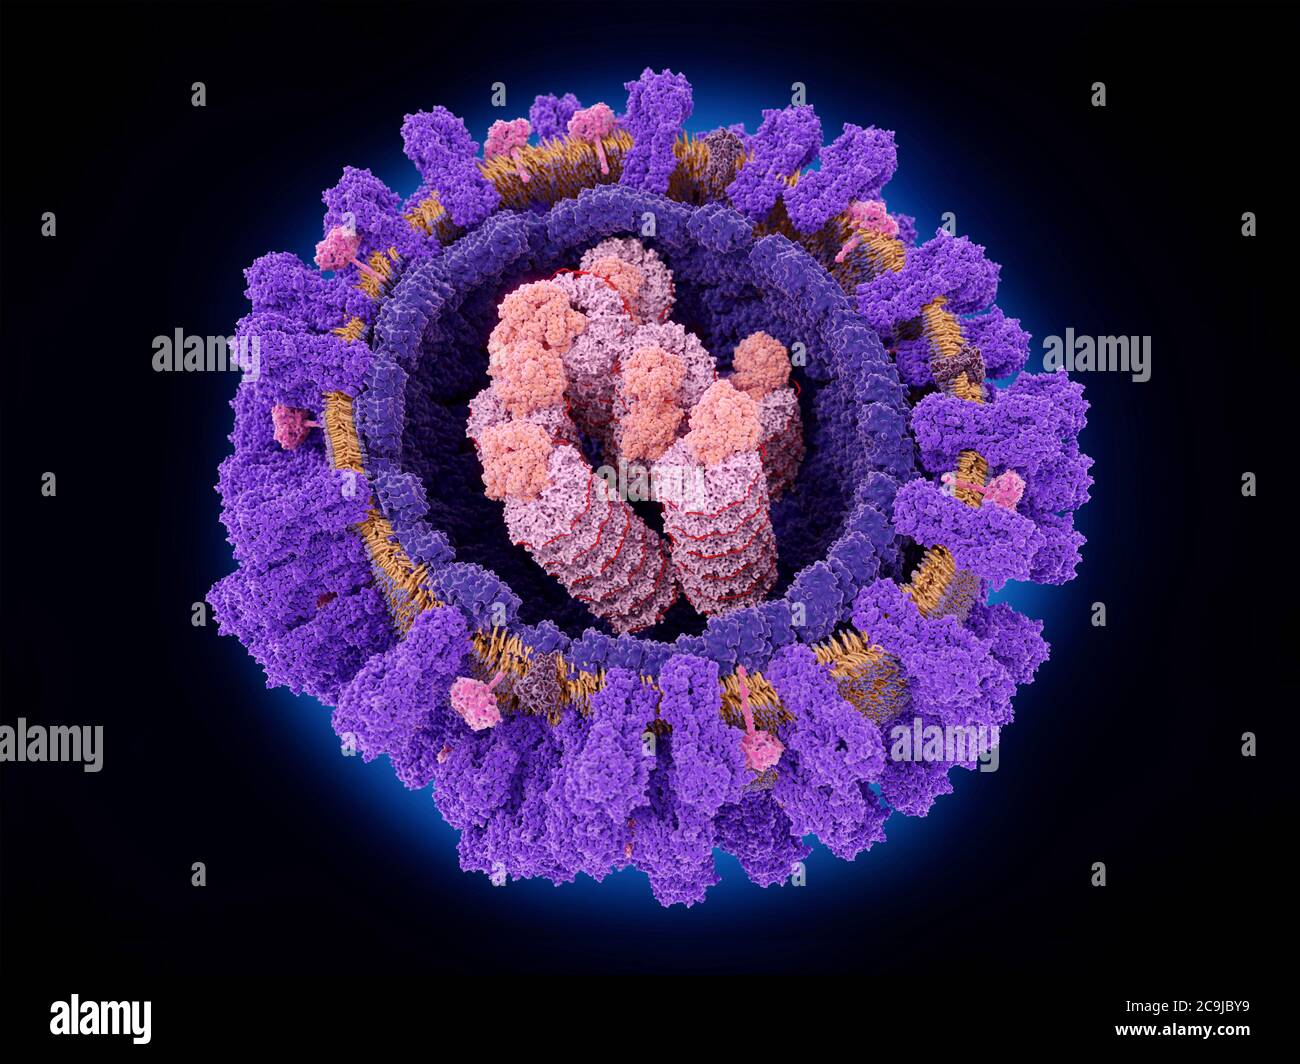 Illustrazione che mostra la struttura di un virus influenzale. Al nucleo del virus vi sono particelle ribonucleoproteiche che includono l'RNA virale (ribonu Foto Stock